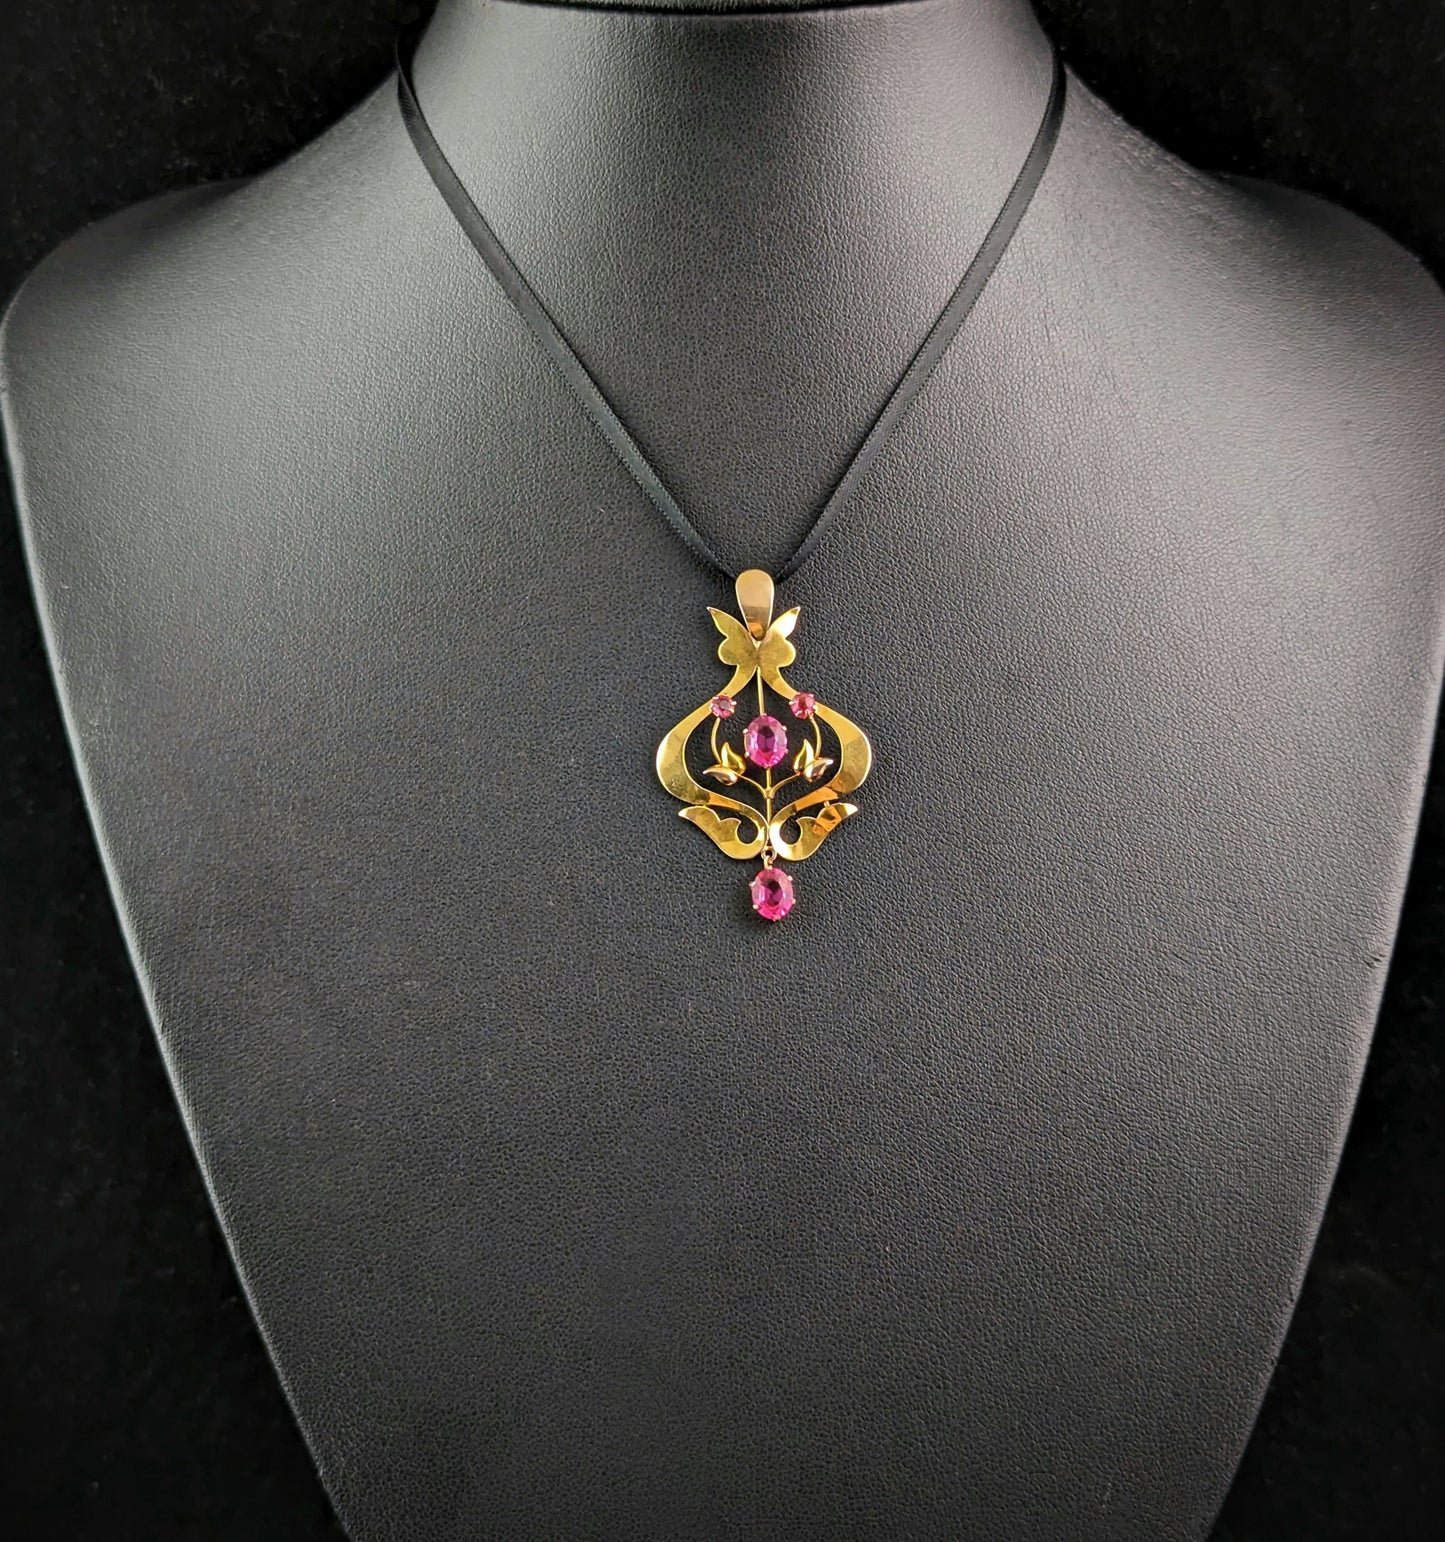 Antique 9ct gold and Pink paste pendant, Art Nouveau